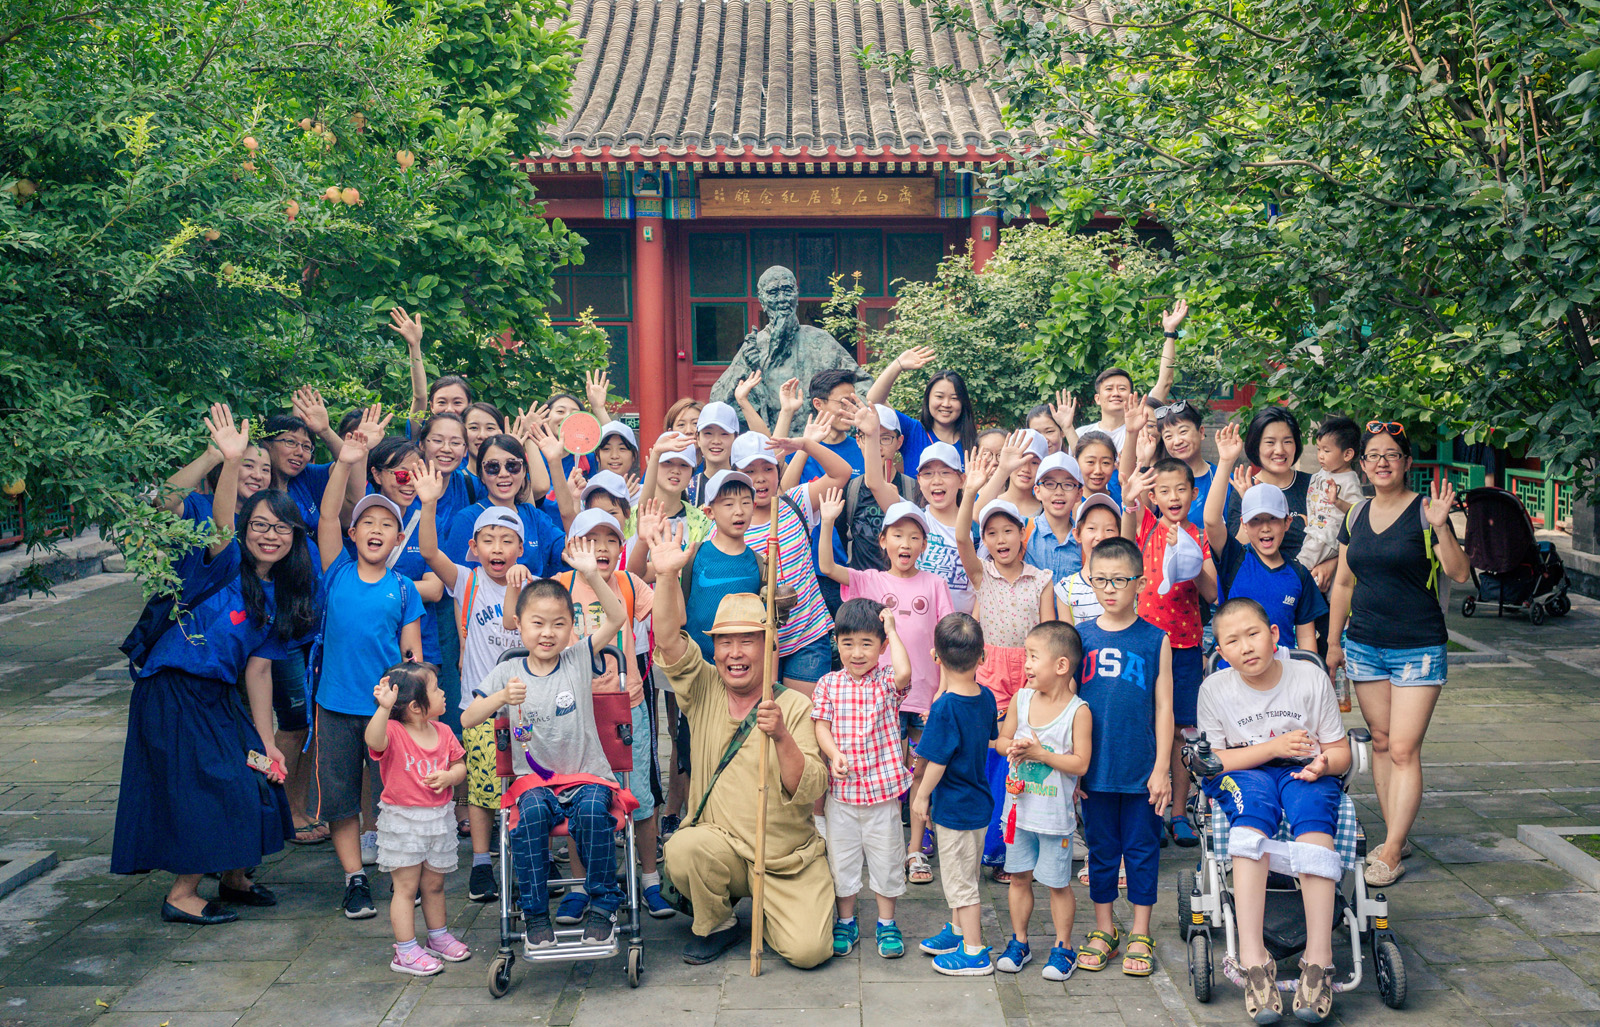 太古地产爱心大使携手北京至爱杜氏肌营养不良关爱中心和将台社区组织一起来听“老北京的声音”活动。